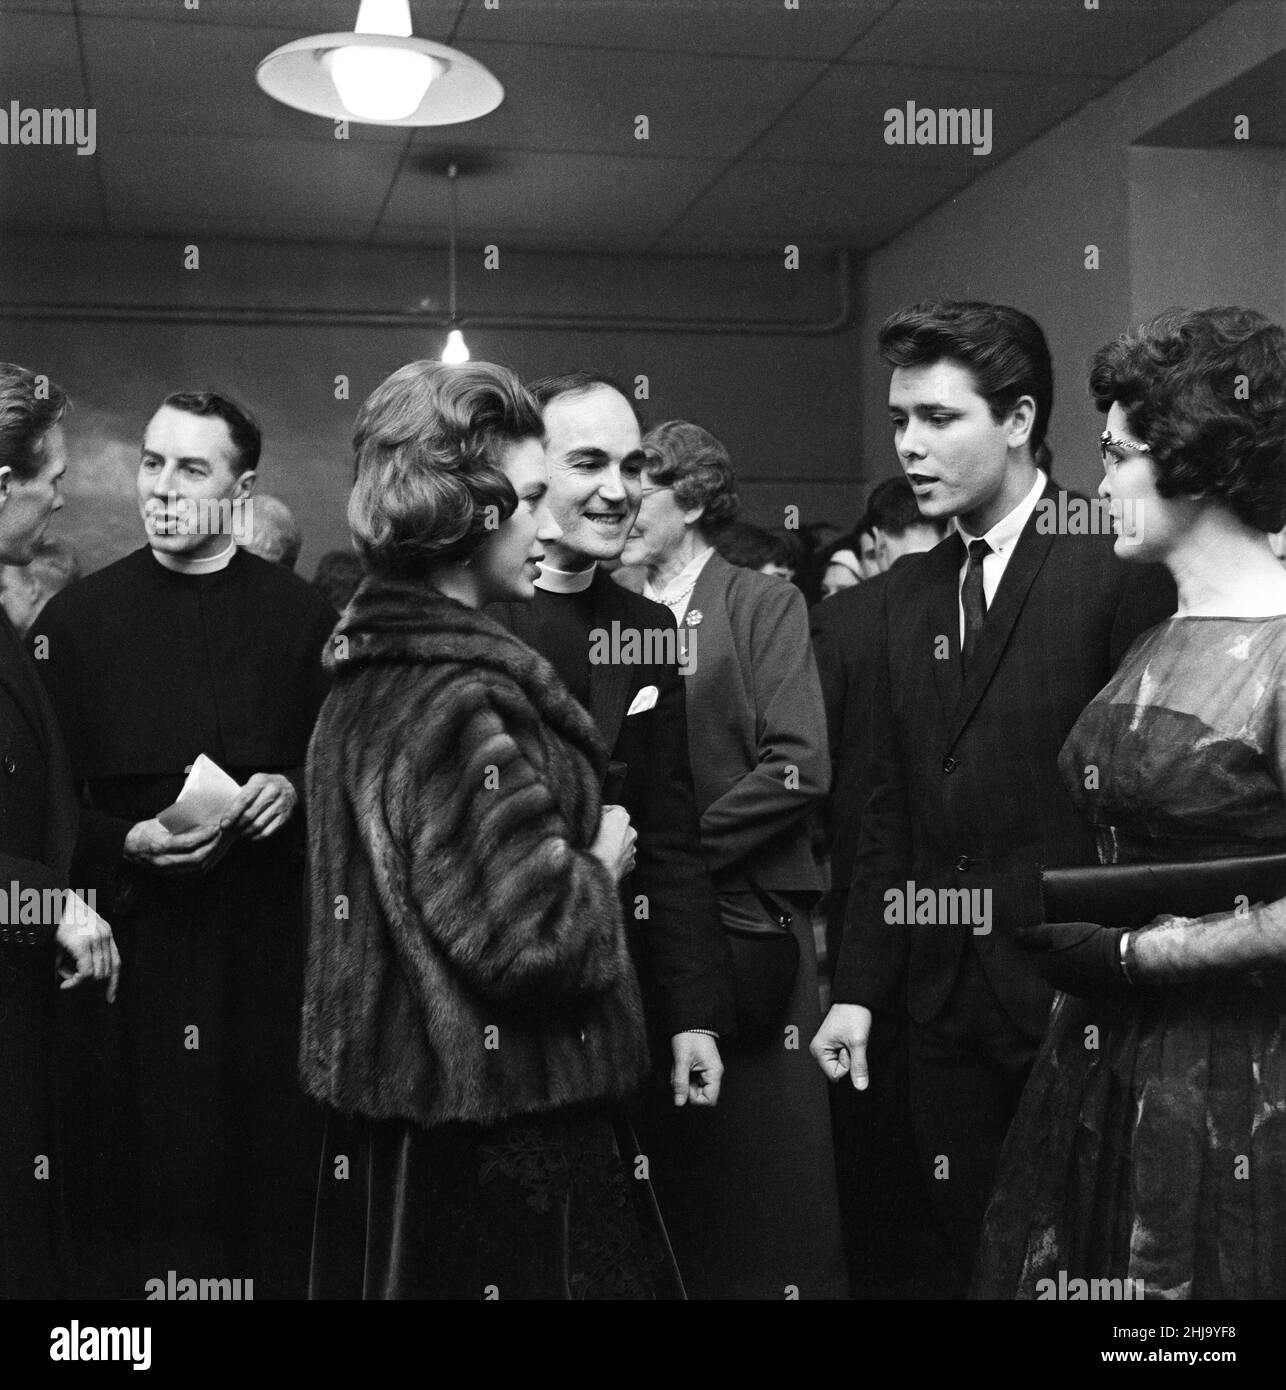 La princesse Margaret et l'évêque de Bath and Wells rencontrent Cliff Richard au club 59, mission du collège Eton, Hackney Wick.22nd mars 1962. Banque D'Images